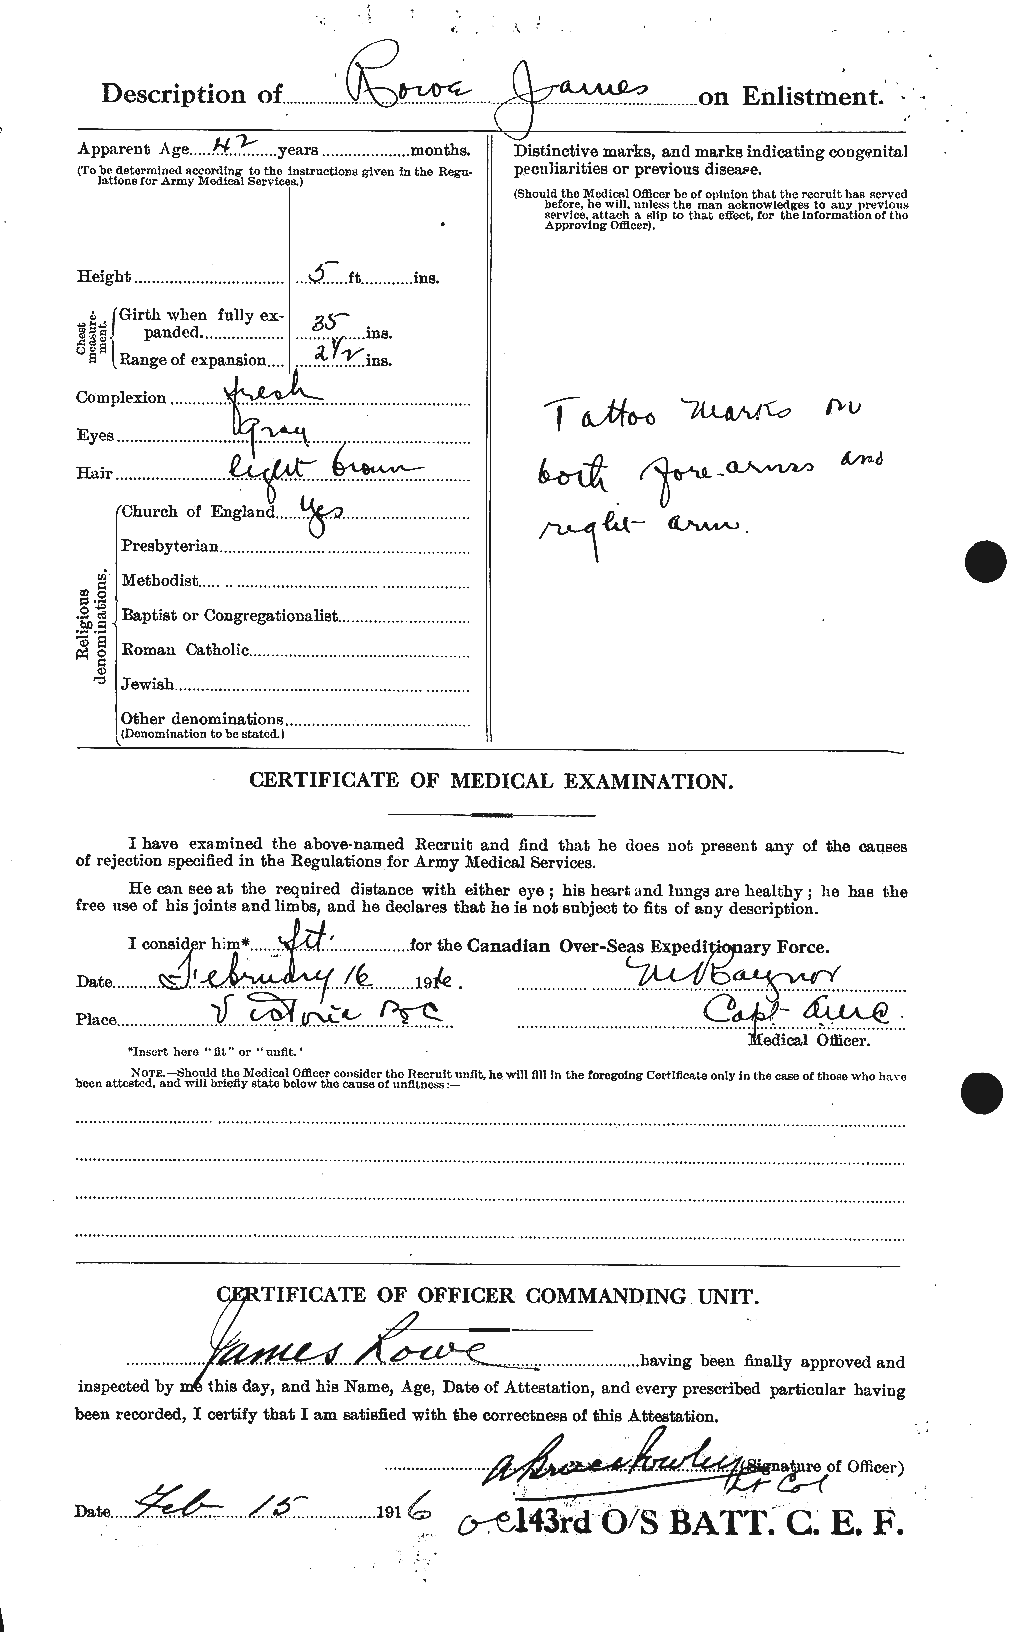 Dossiers du Personnel de la Première Guerre mondiale - CEC 615905b